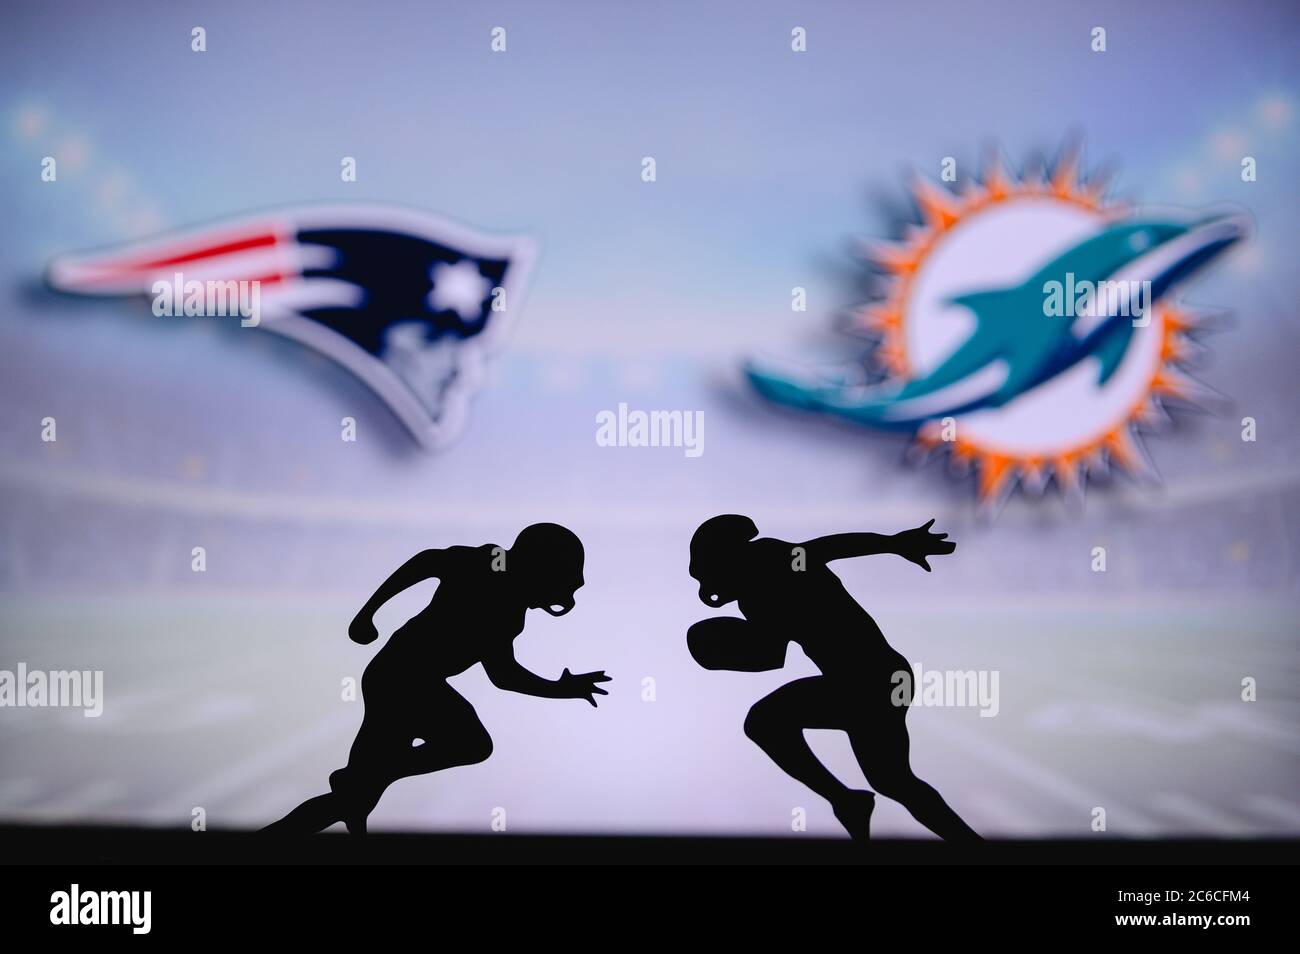 Miami Dolphins vs. New England Patriots Tickets Oct 29, 2023 Miami